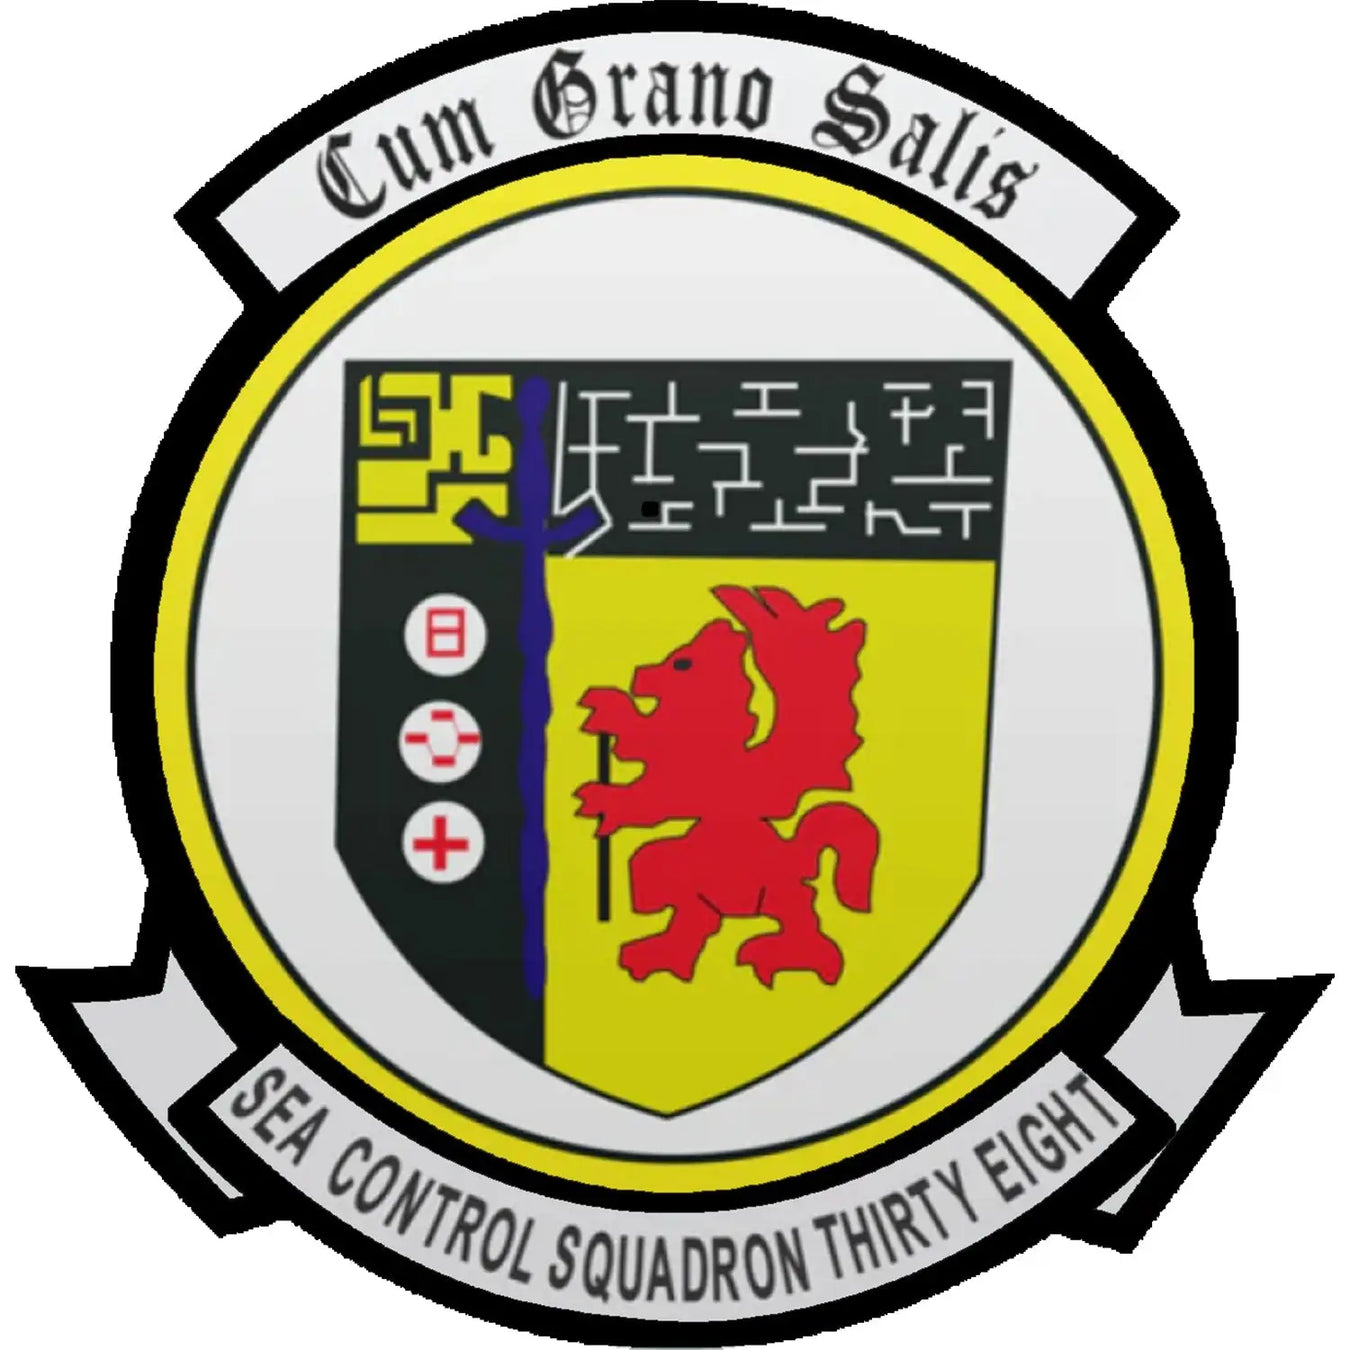 Sea Control Squadron 38 (VS-38)